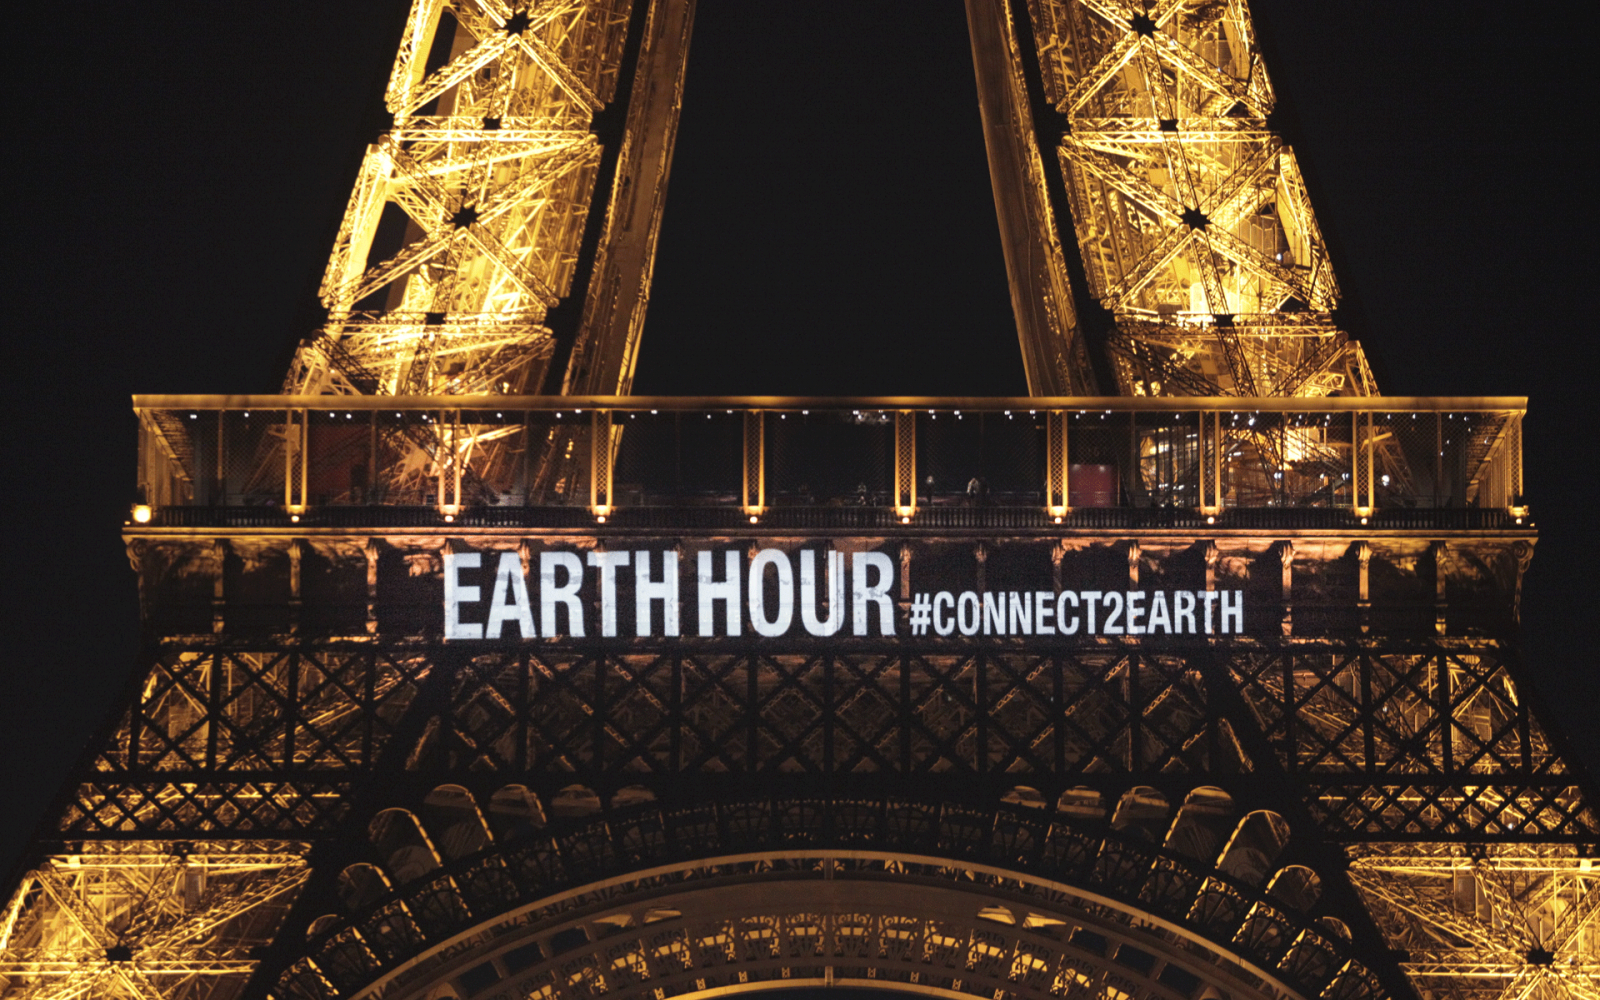 Earth Hour est inscrit sur la Tour Eiffel, quelques heures avant que celle-ci s'éteigne, le 30 mars à 20h30